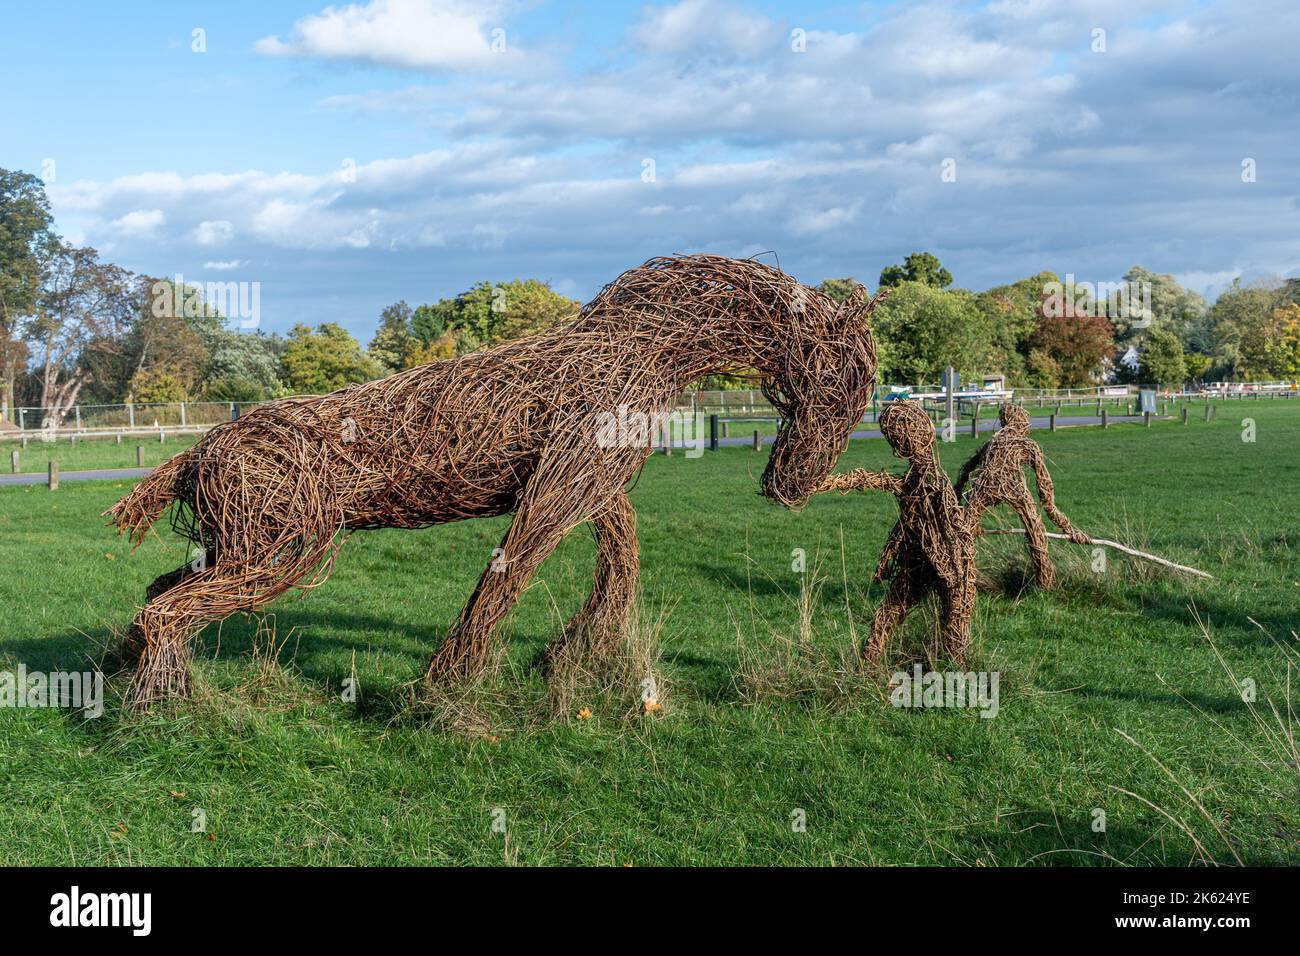 Fenaison, sculptures de Willow Twisters, sur les prairies Runnymede dans le Surrey, Angleterre, Royaume-Uni. Sculpture extérieure, œuvres d'art Banque D'Images